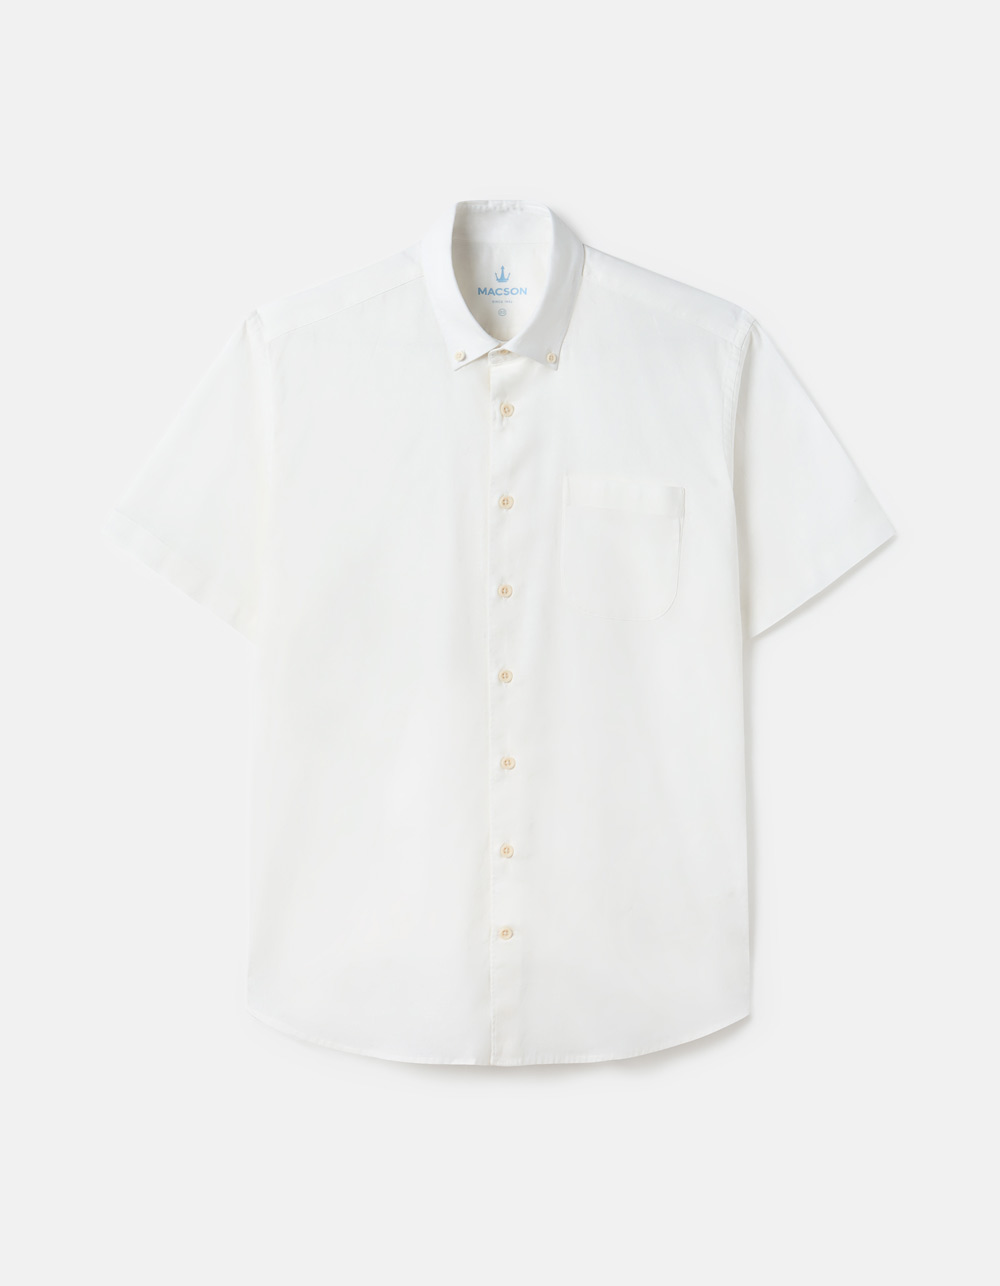 Linen and Cotton short sleeve shirt.